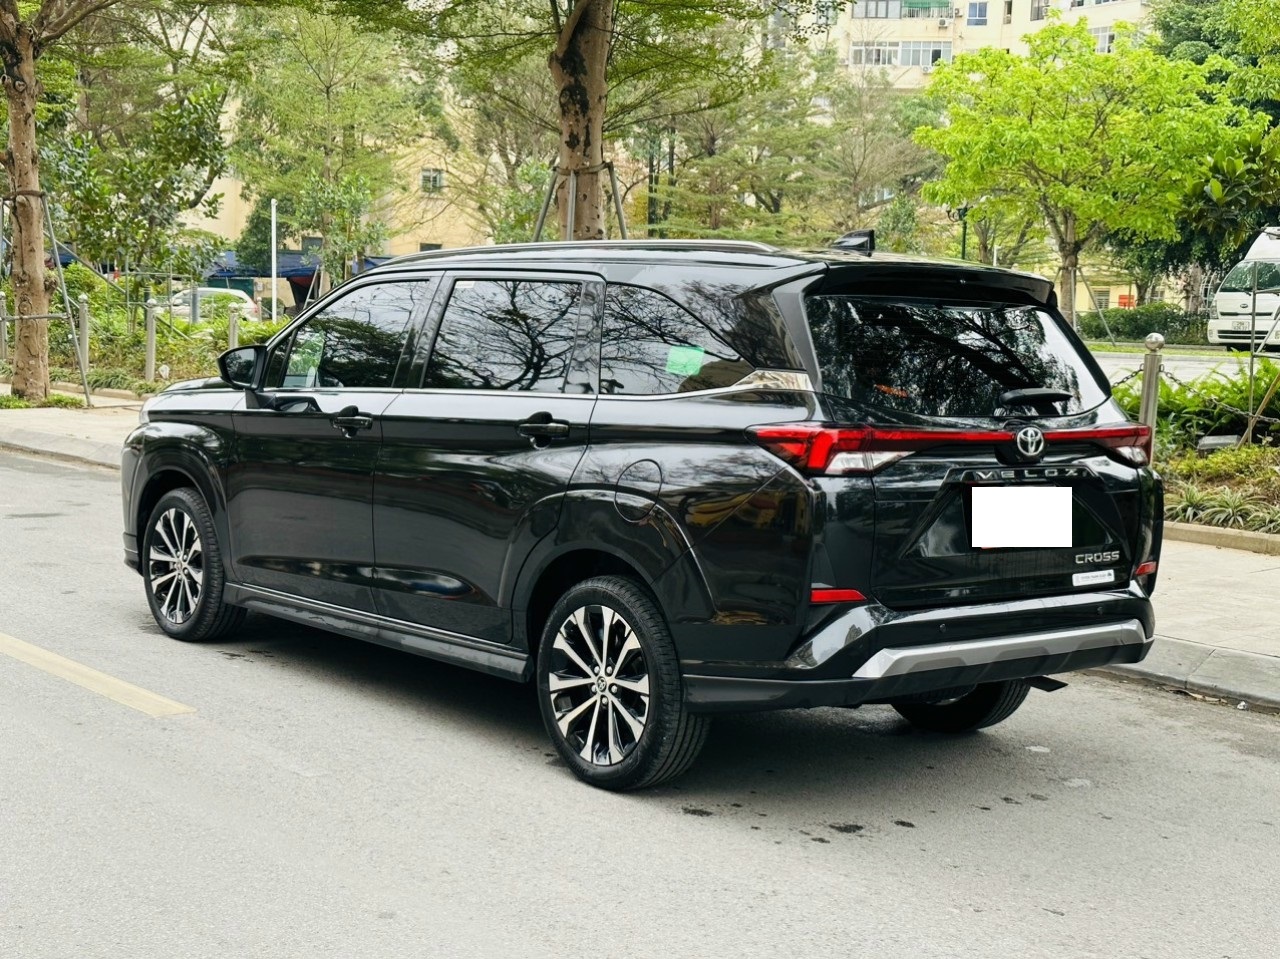 Toyota Veloz Cross bộc lộ ưu nhược điểm sau 1 năm bán ra tại Việt Nam - Ảnh 2.